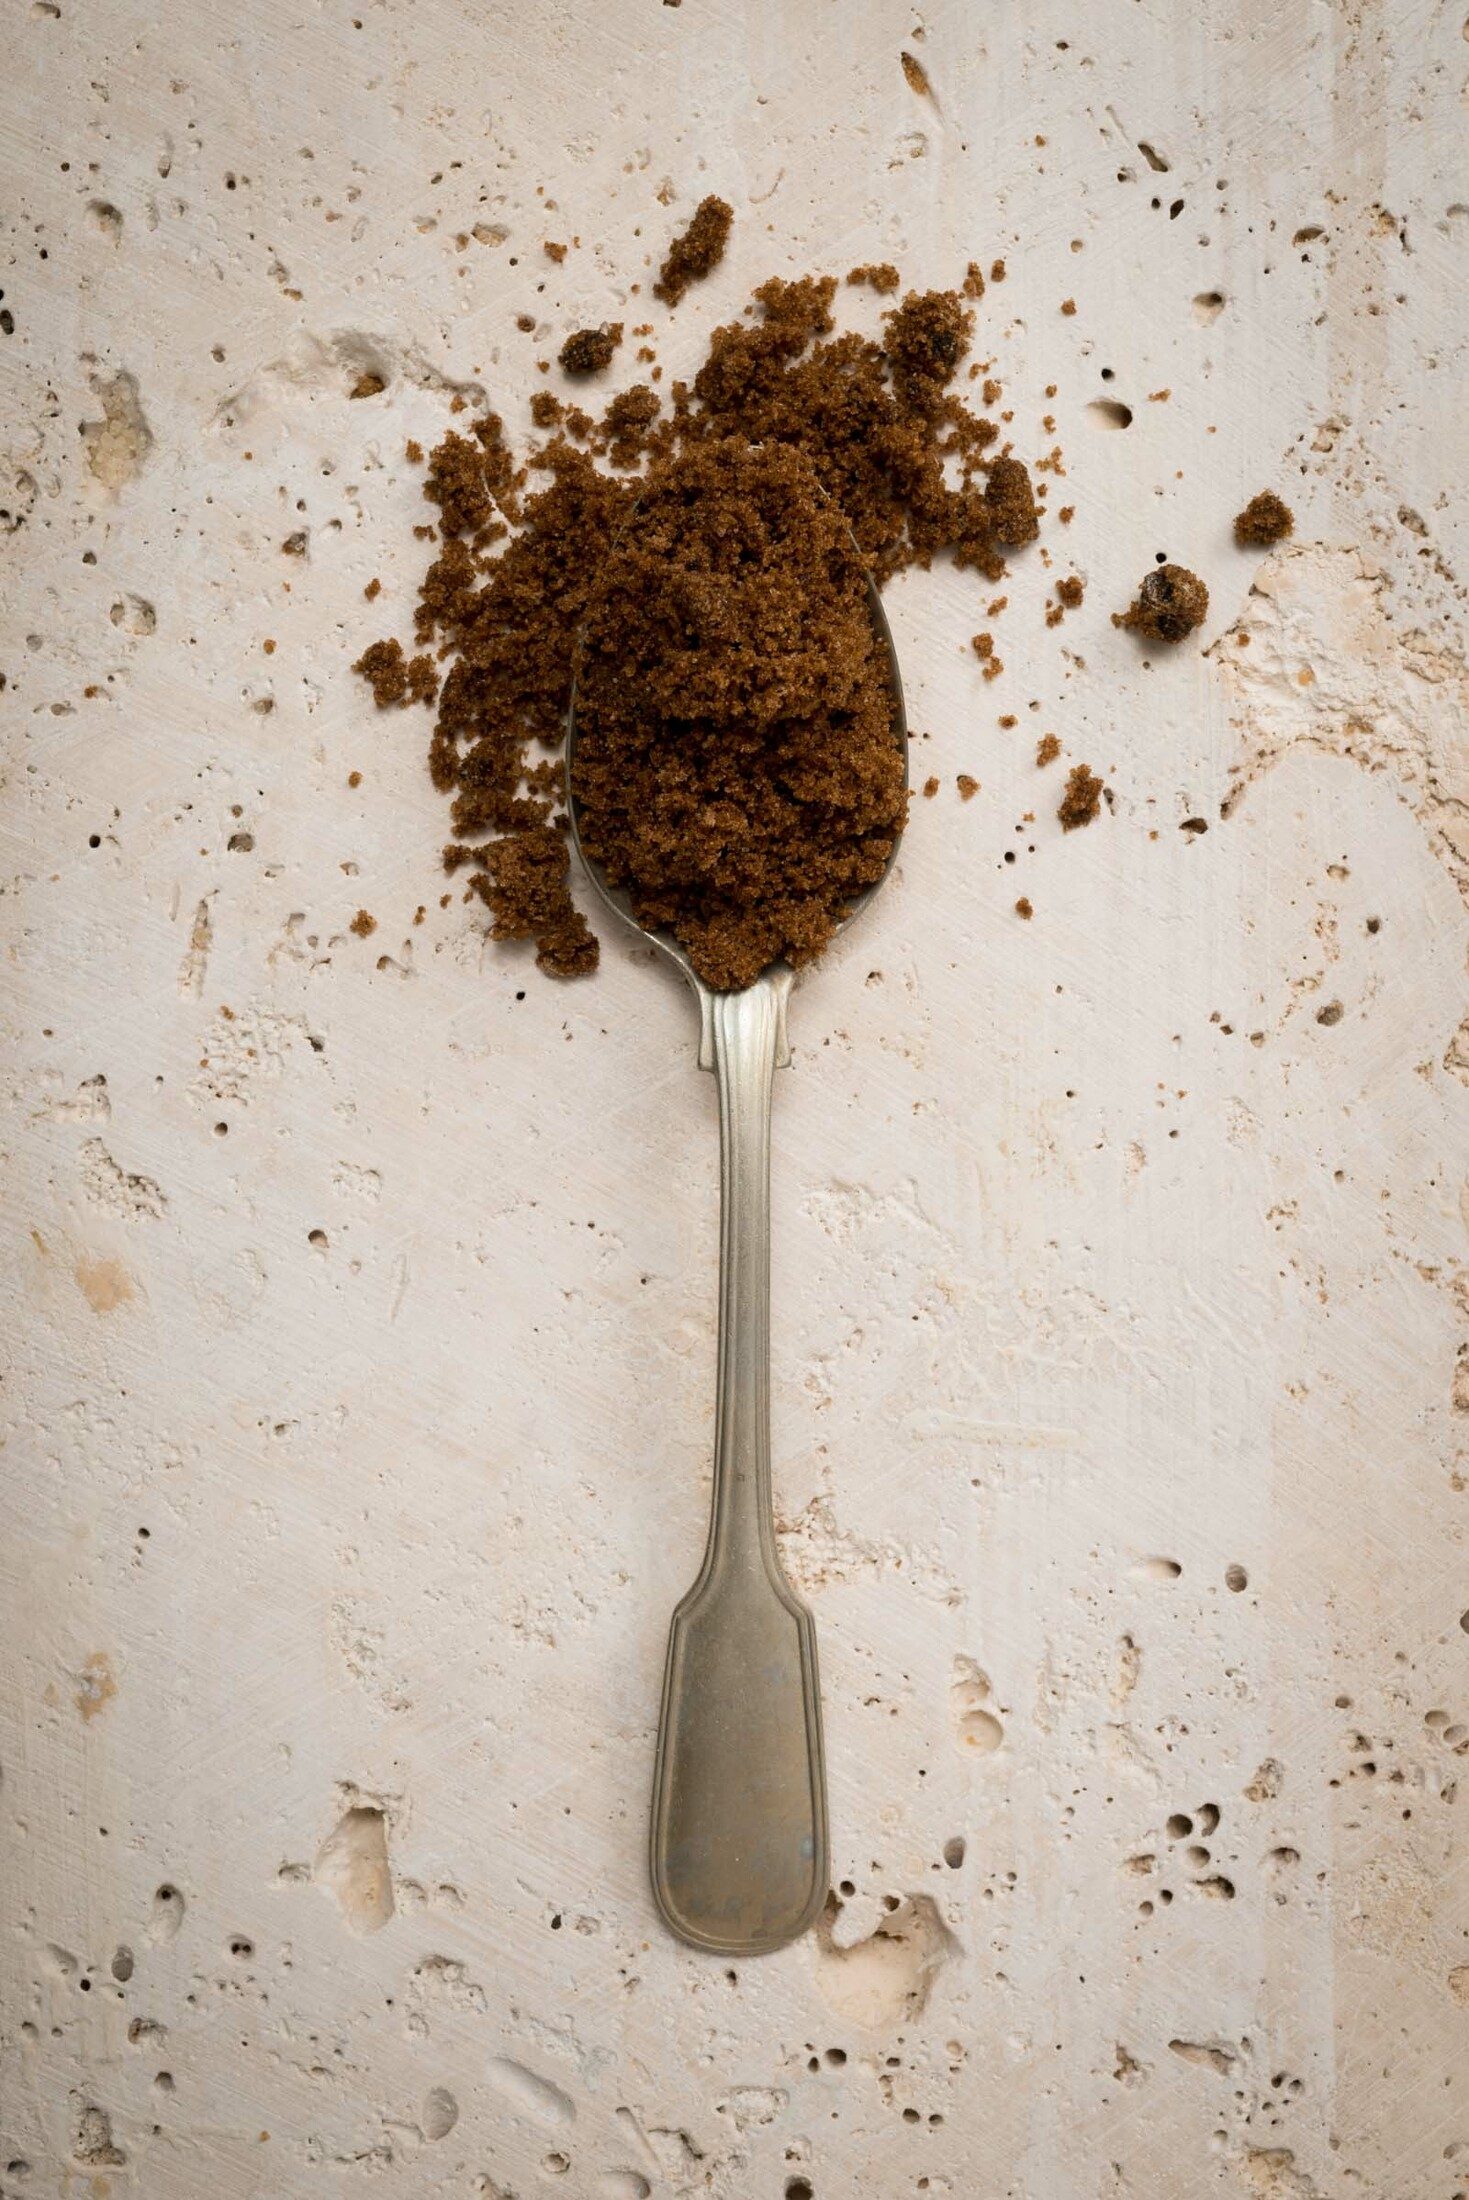 Teaspoon filled with dark brown sugar